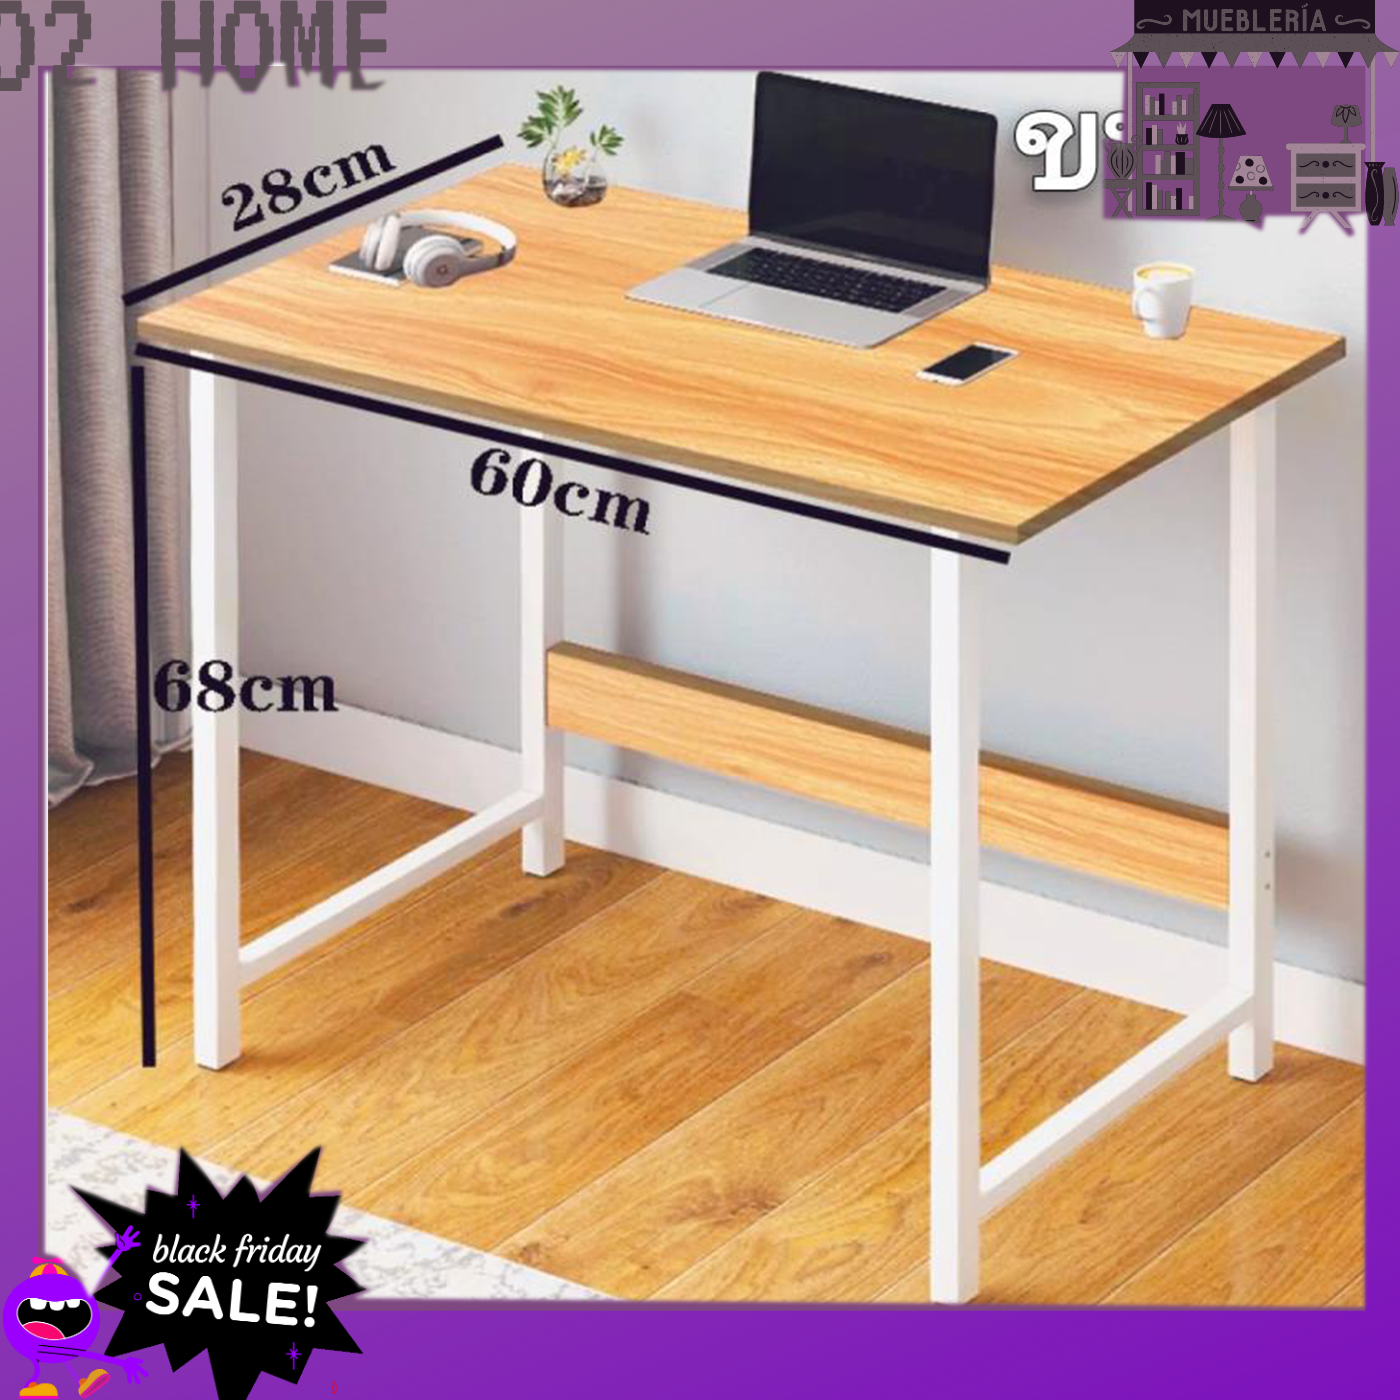 O2 HOMEโต๊ะทำงาน โต๊ะคอม โต๊ะกินข้าว โต๊ะวางของ โต๊ะโต๊ะทำงานไม้ โต๊ะคอมพิวเตอร์ หน้าโต๊ะไม้ขนาดโต๊ะเขียนหนังสือ68x60x28ซม Comp